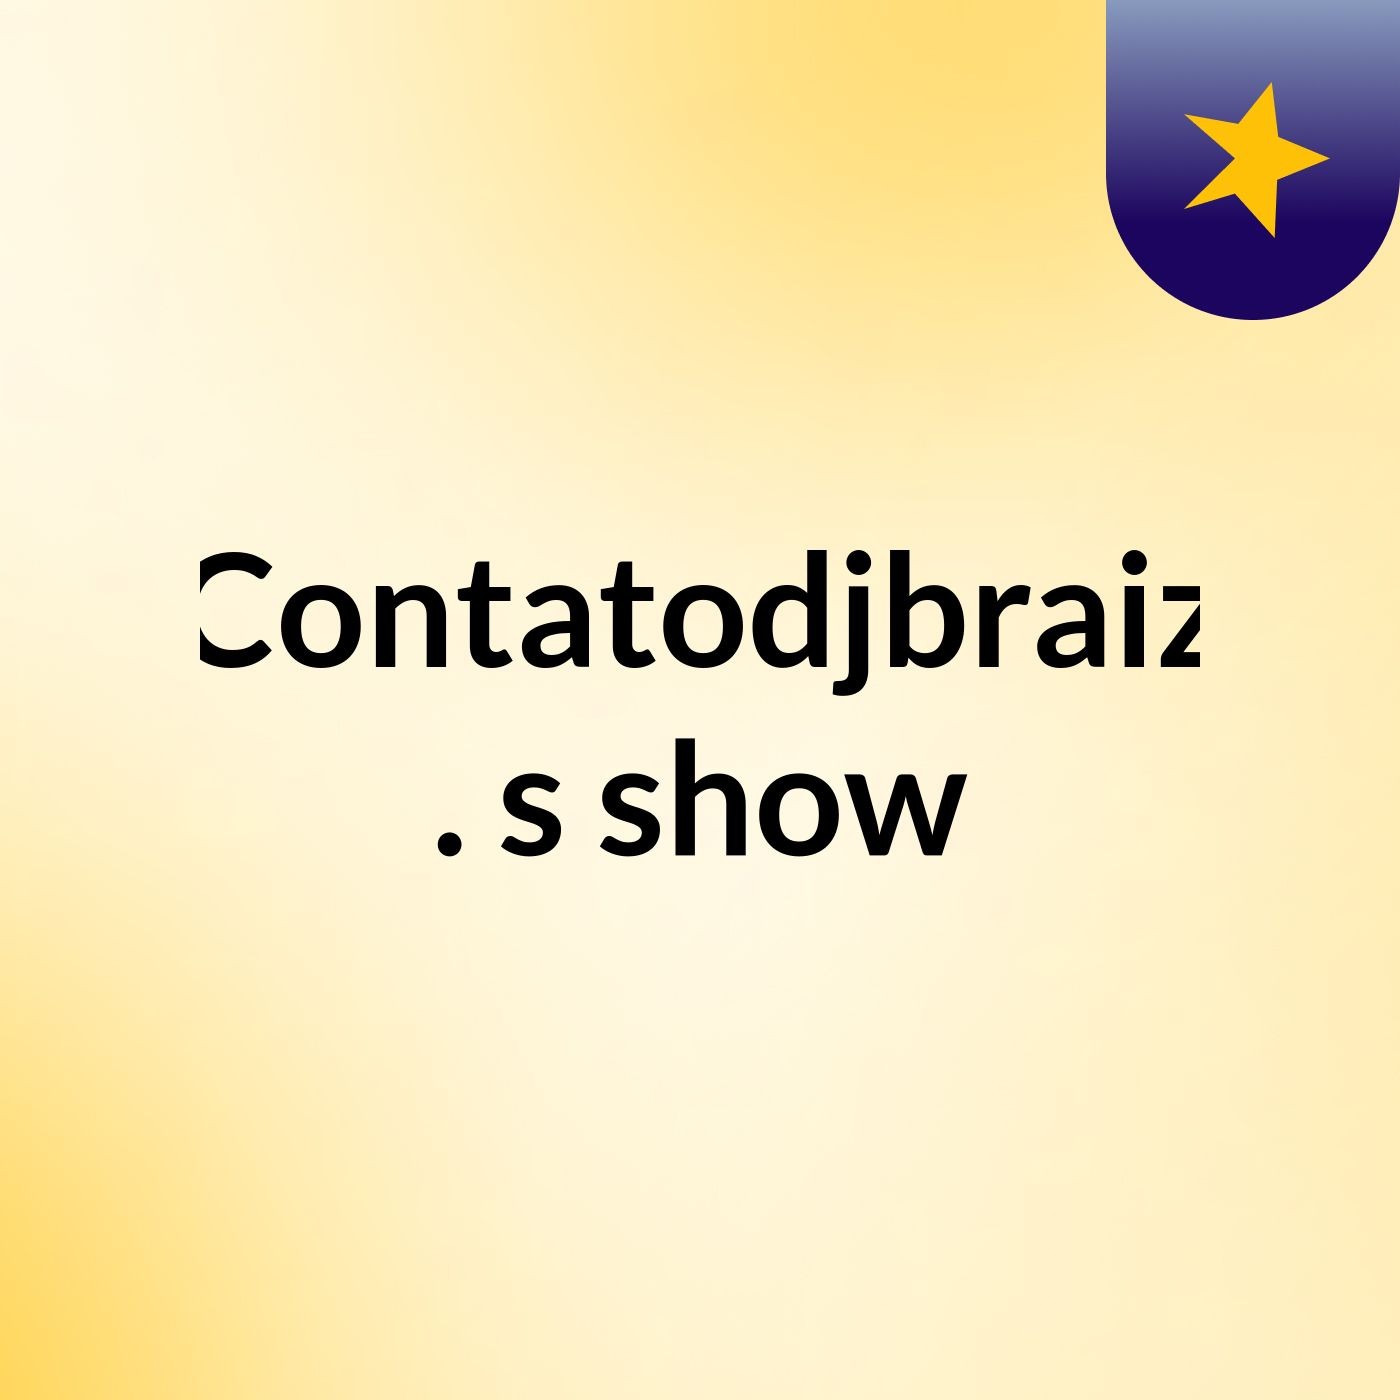 Contatodjbraiz .'s show